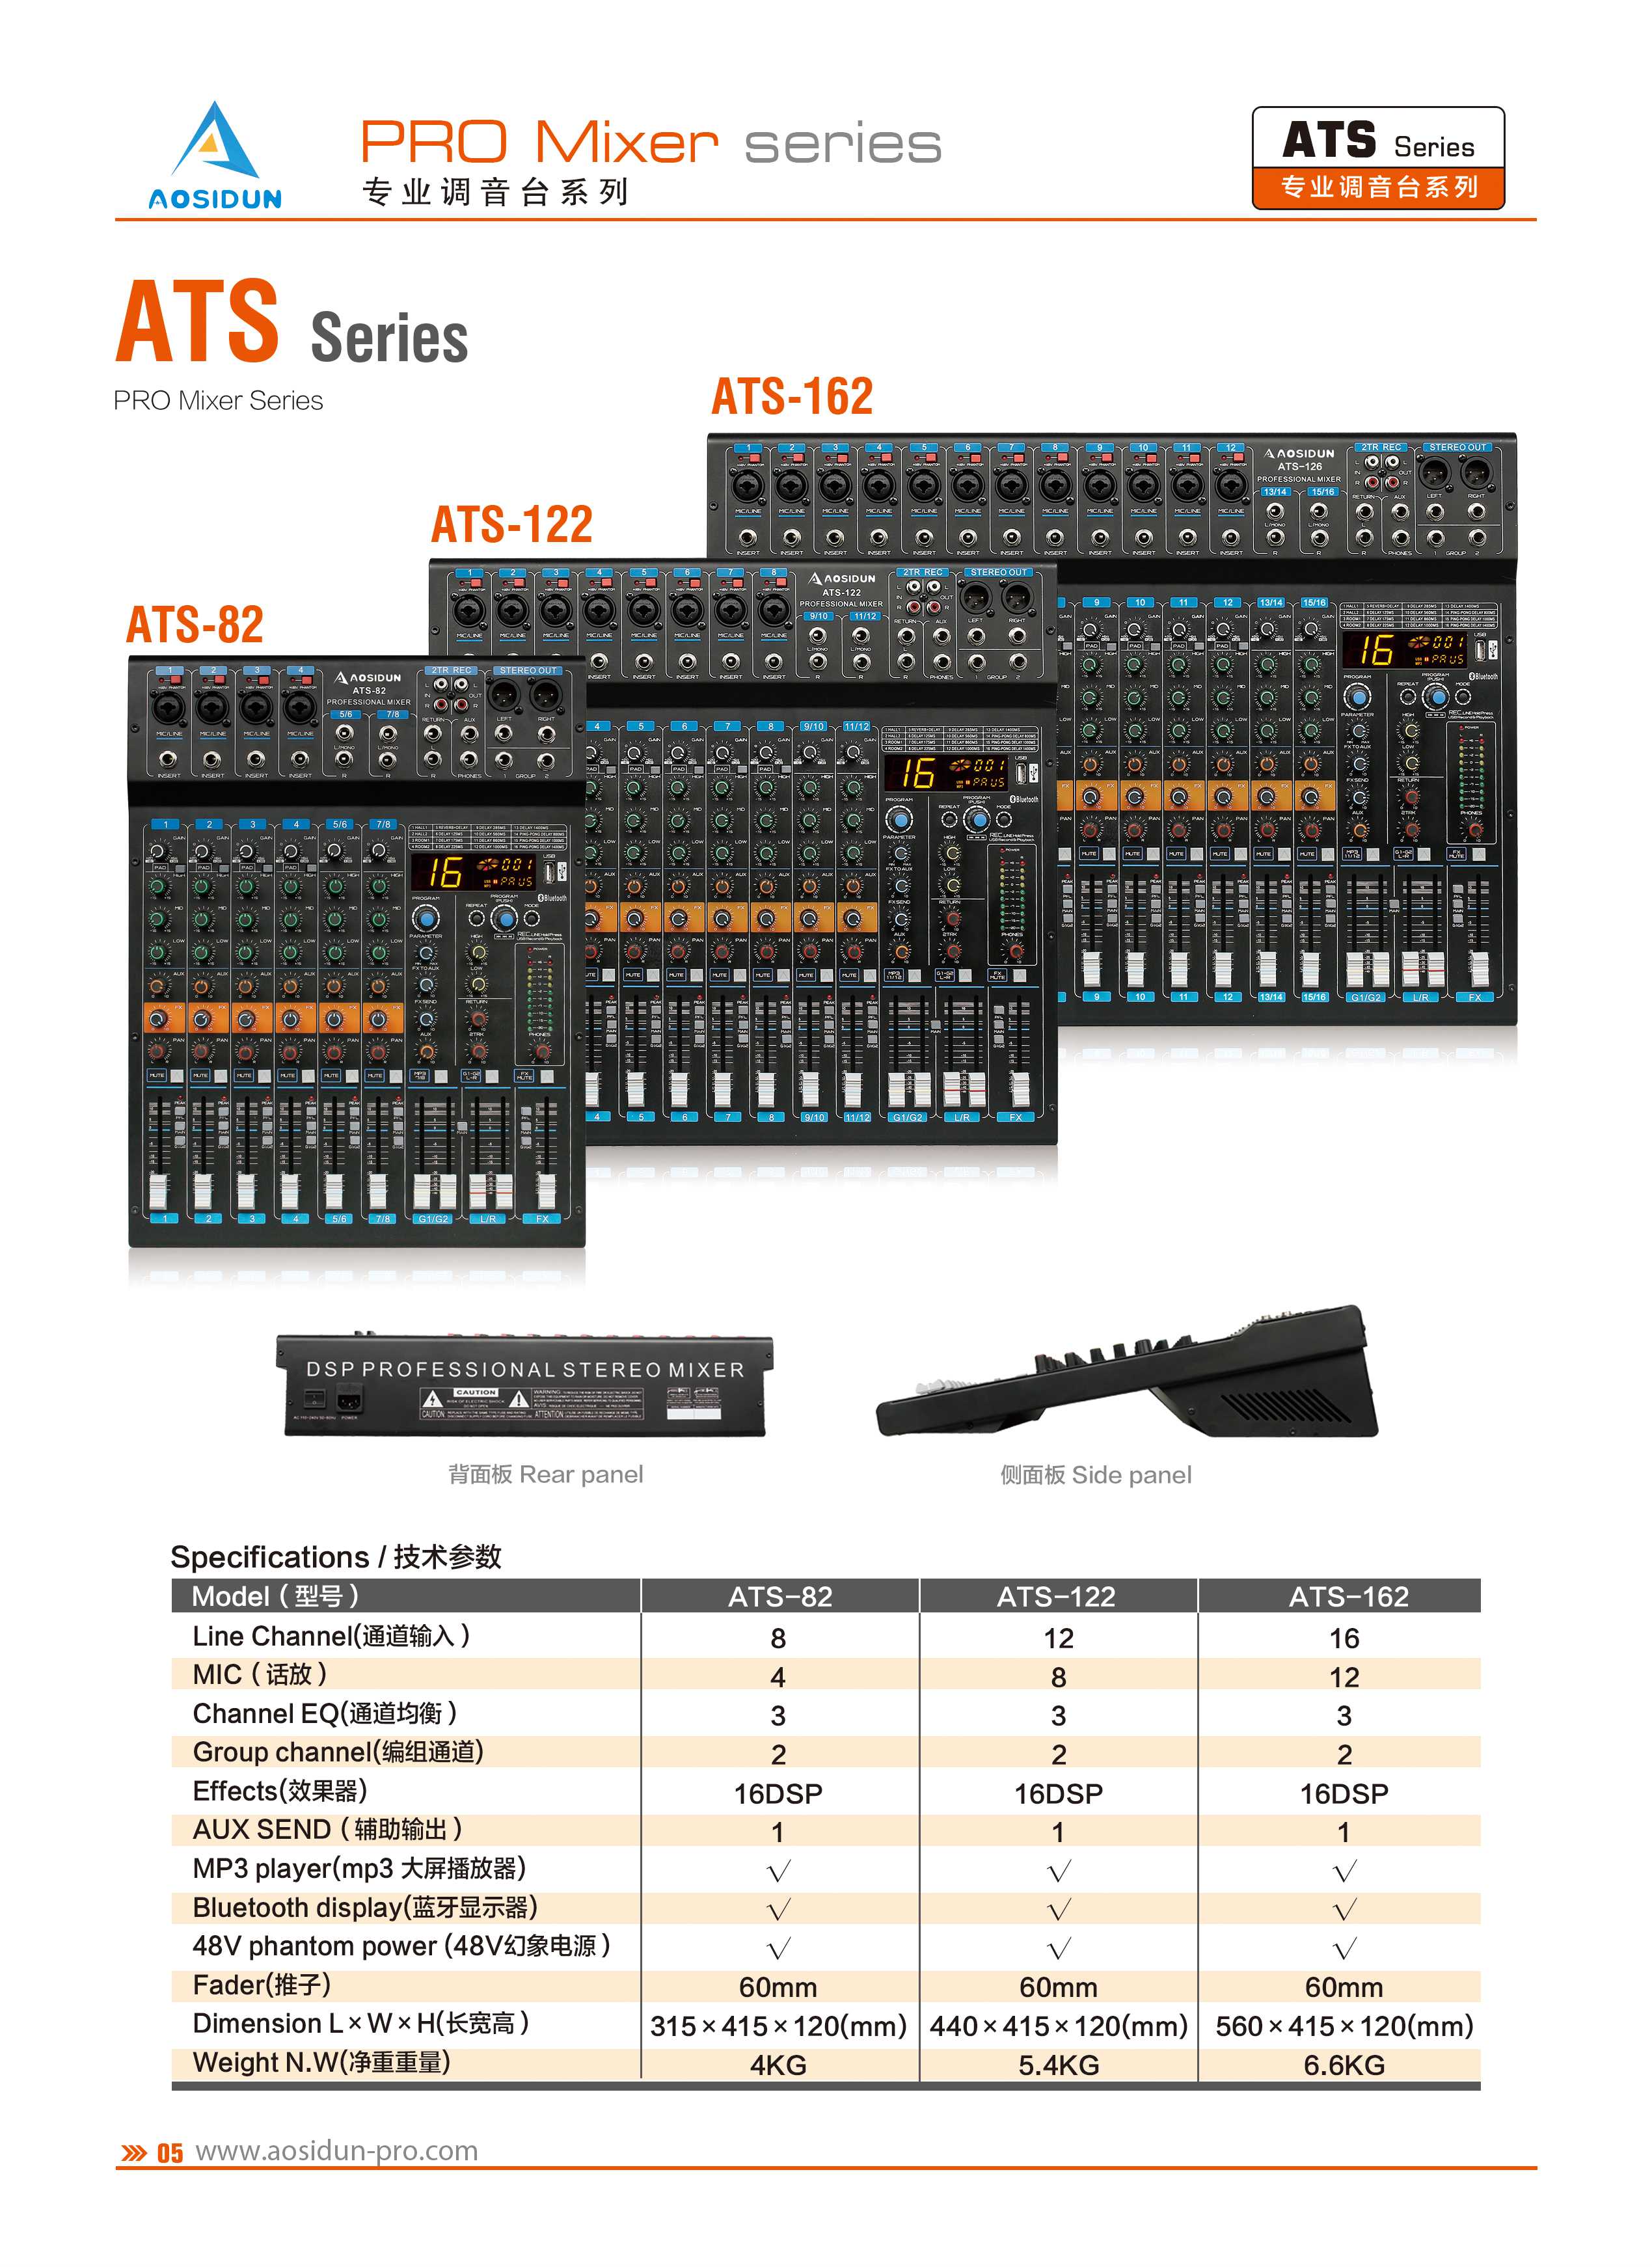 本厂直销ATS系列调音台提供8/12/16路通道设计内置DSP效果+MP3蓝牙录音功能